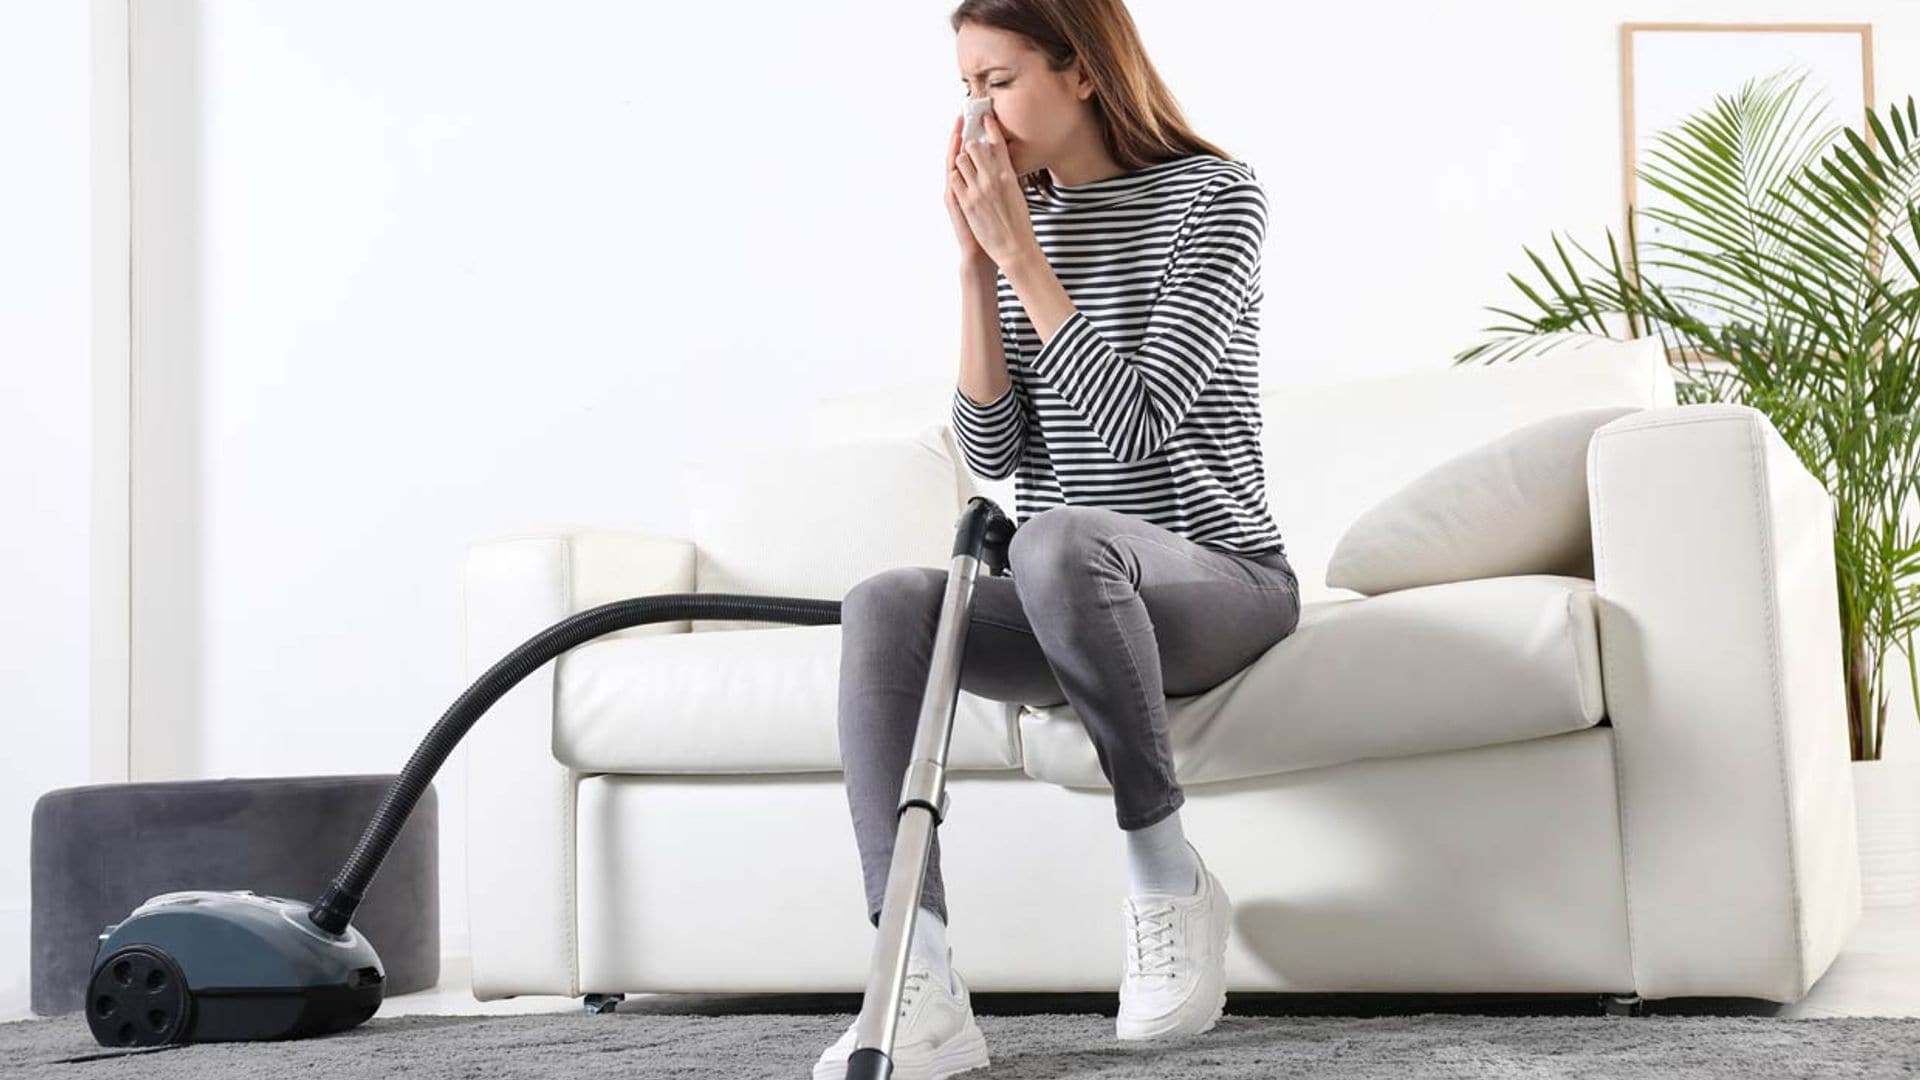 Medidas eficaces para prevenir la alergia dentro de casa